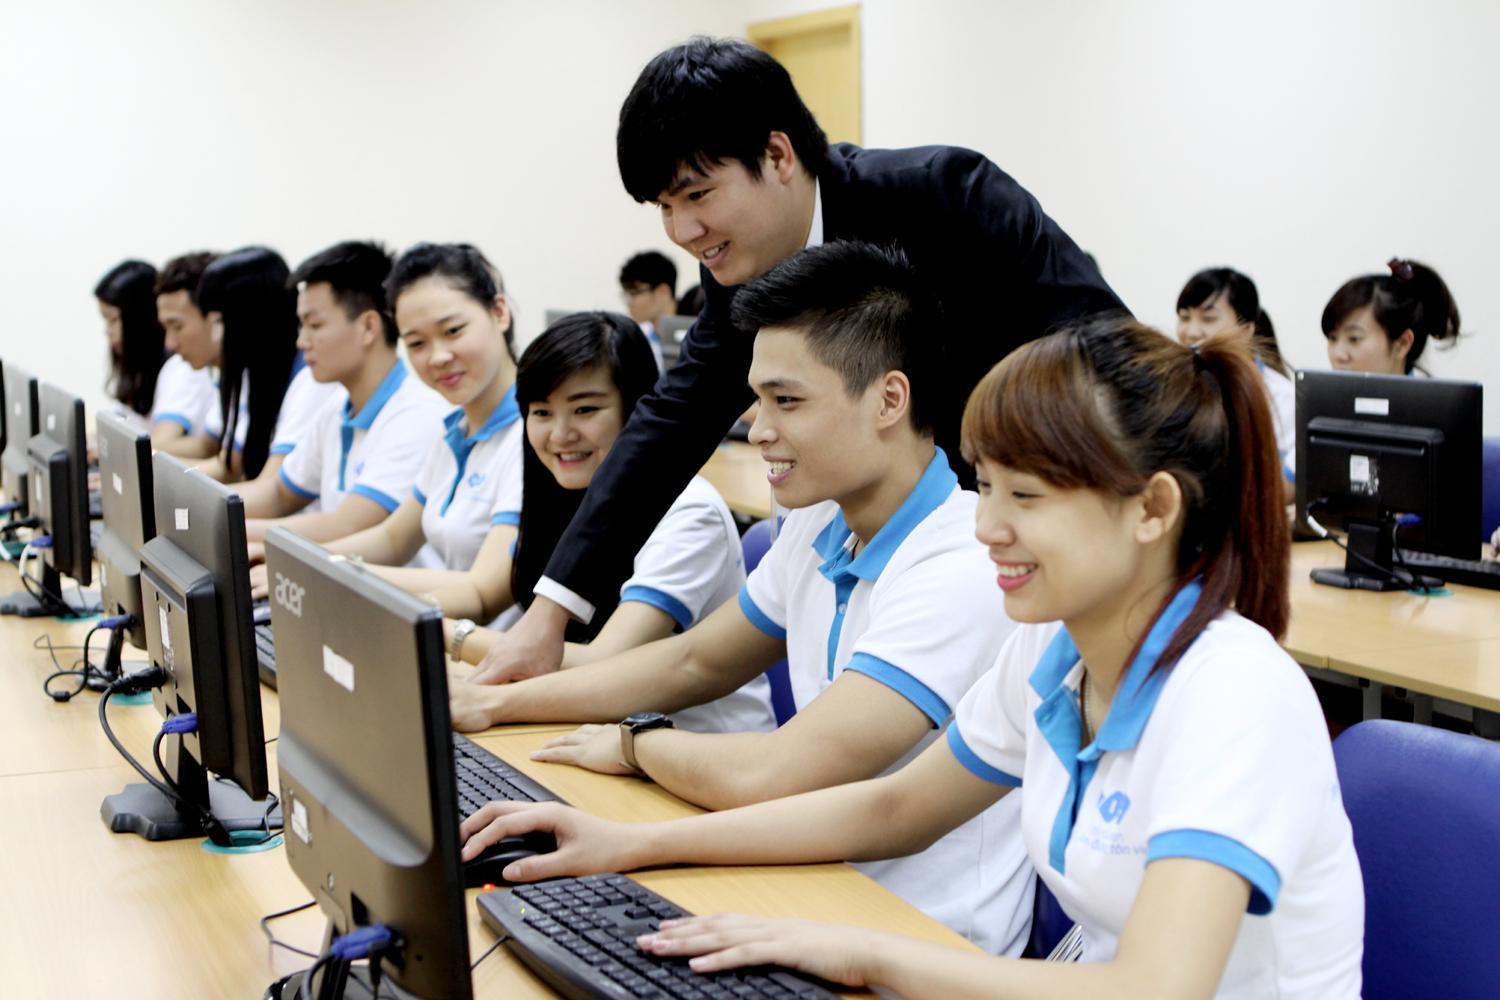 Trung tâm tin học nào đào tạo và cấp chứng chỉ tin học uy tín ở Hà Nội?